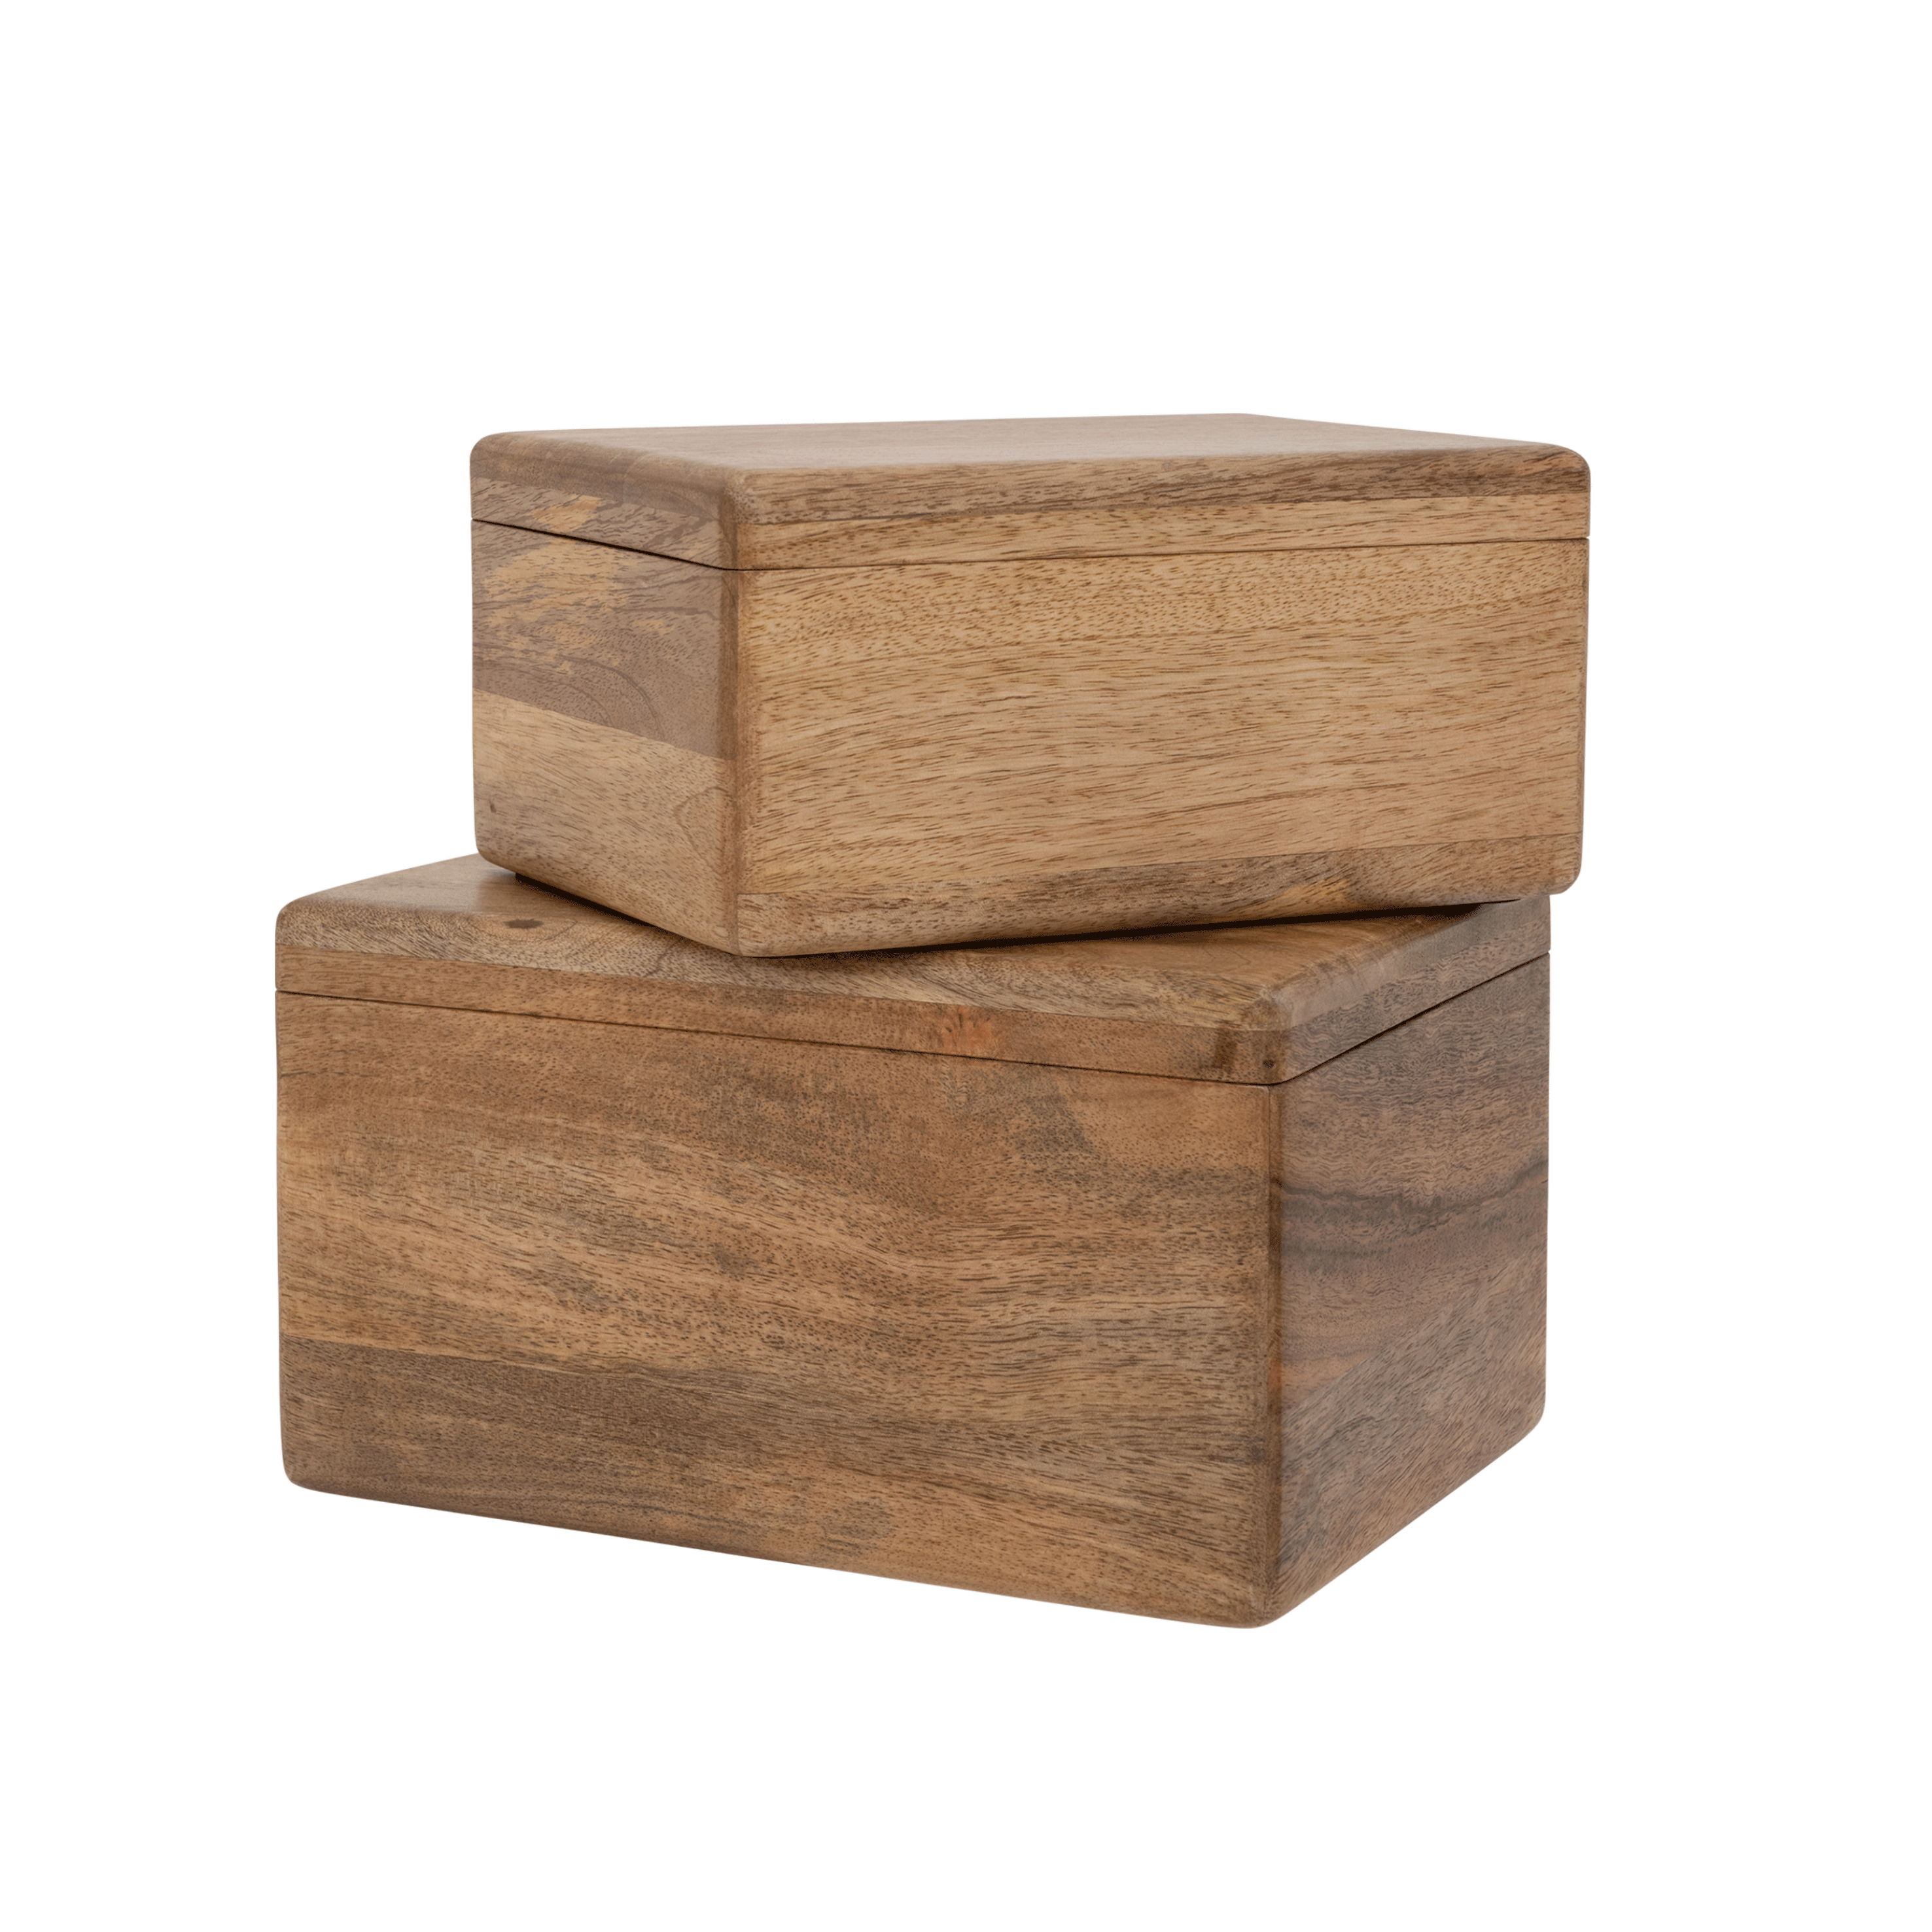 Unc Box Mango Wood Set Of 2 Gift